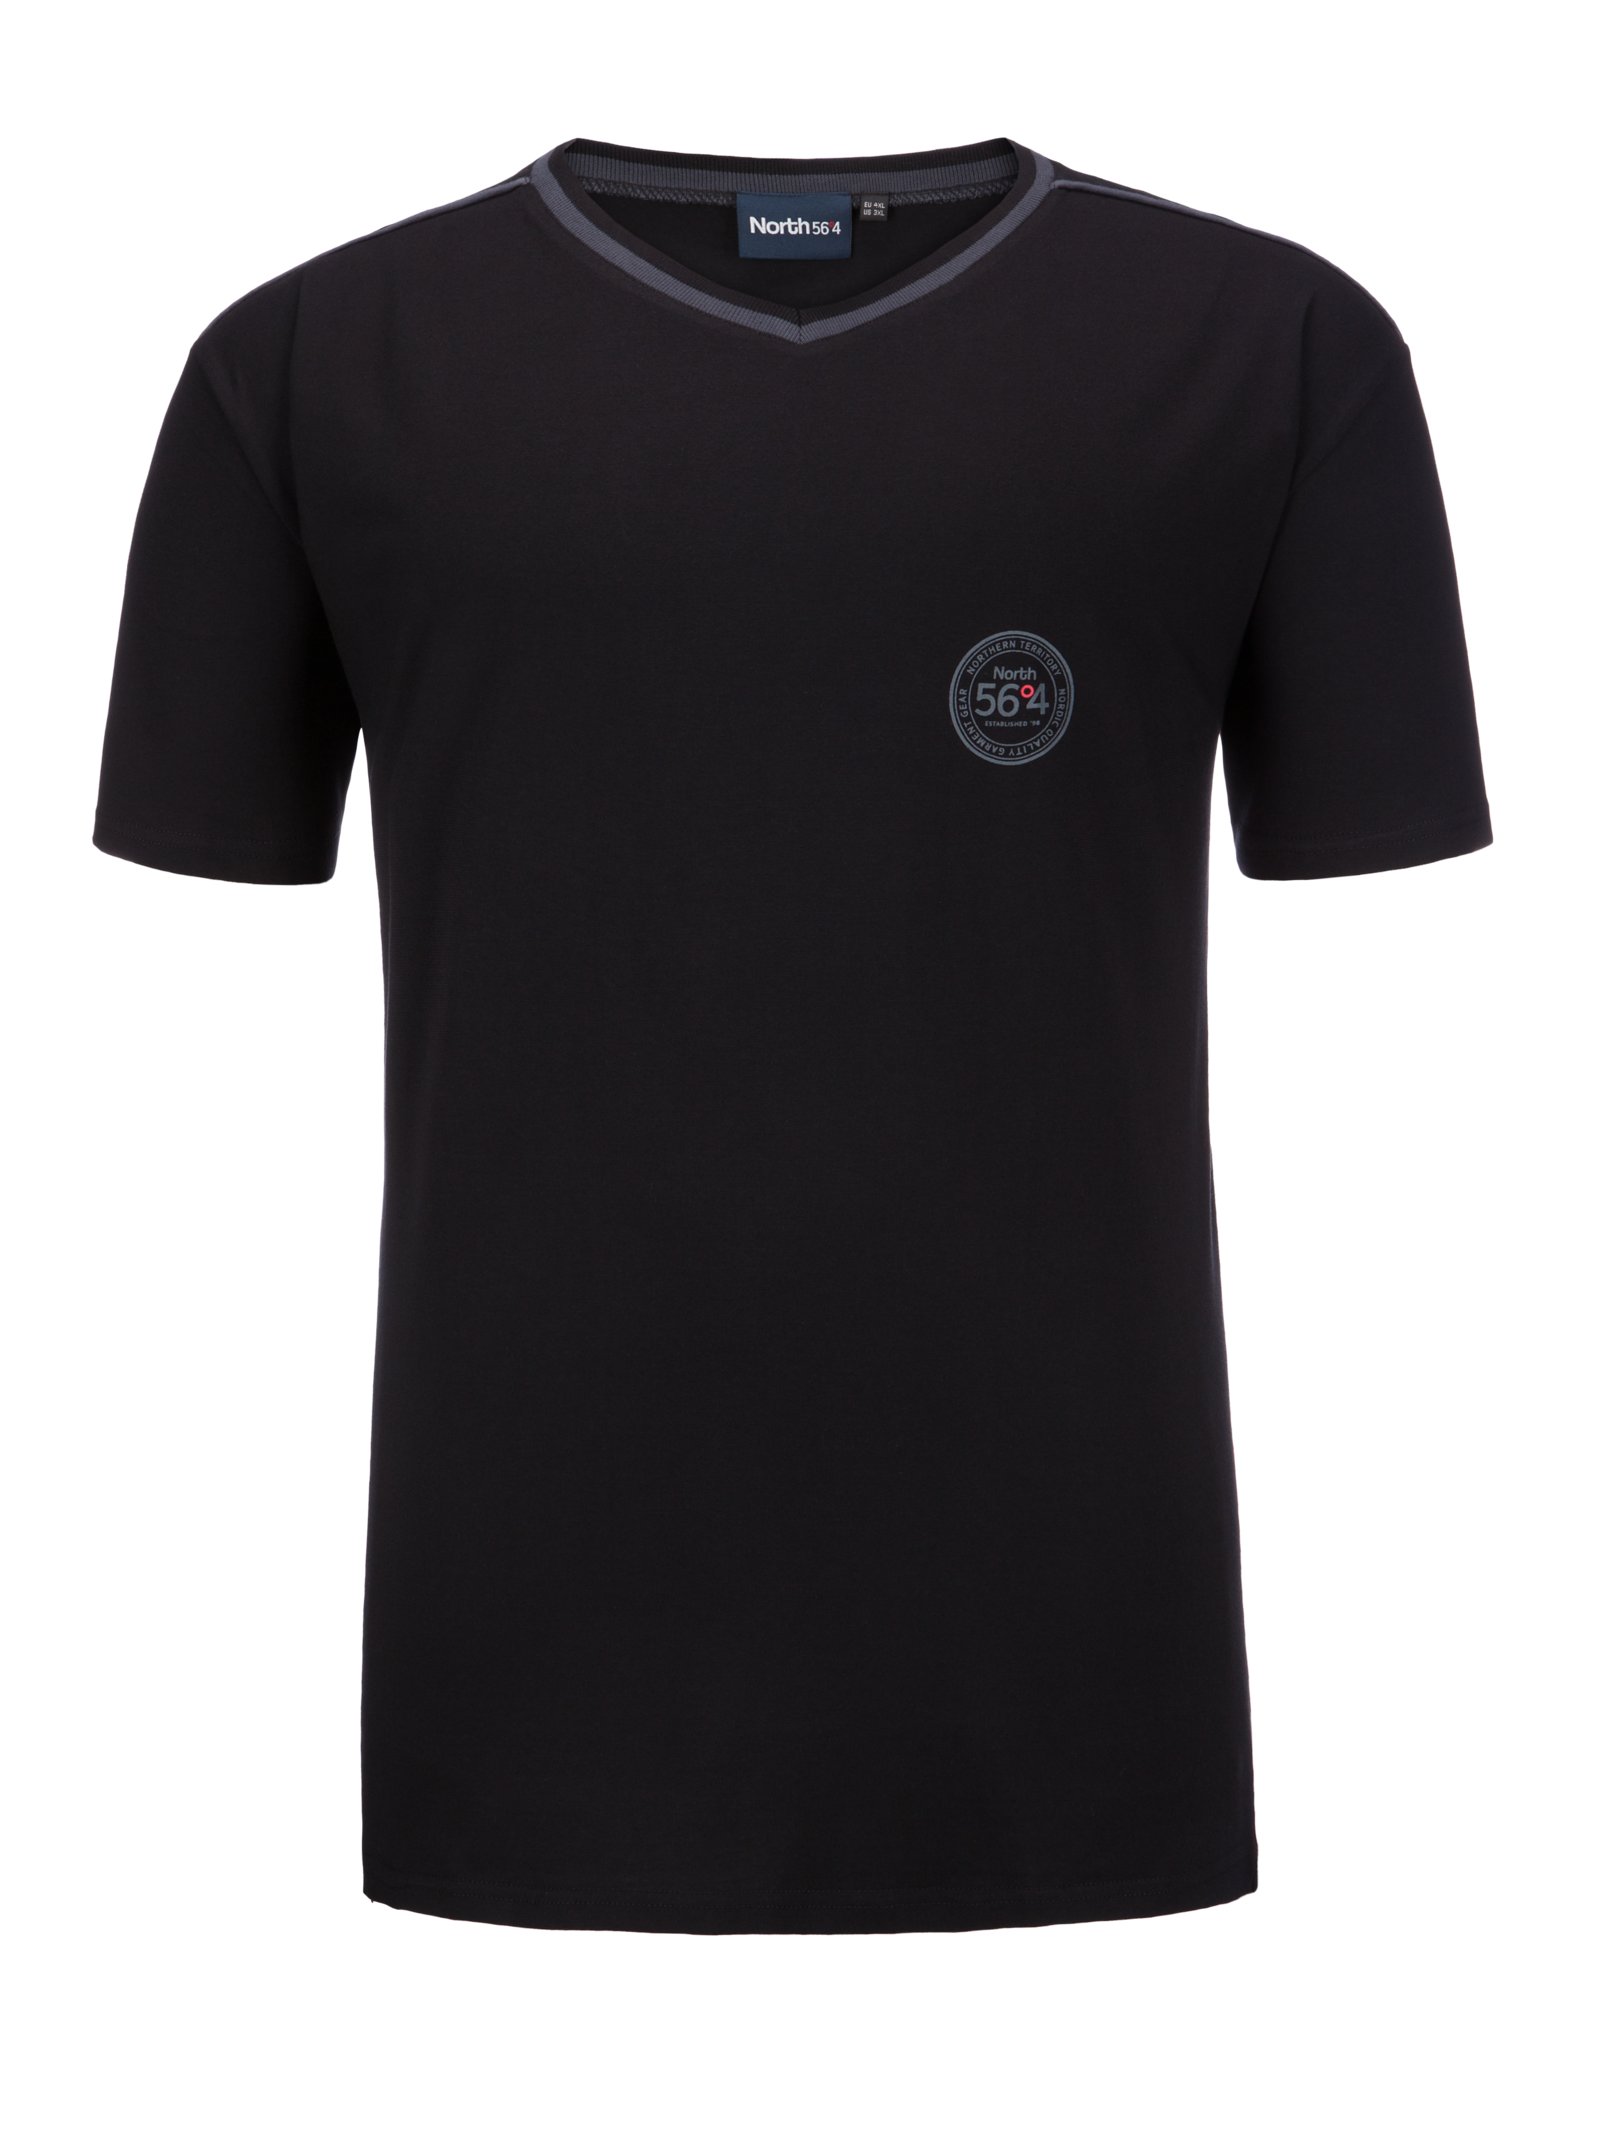 Übergröße : North 56°4, Homewear-Shirt, kurzarm in Schwarz